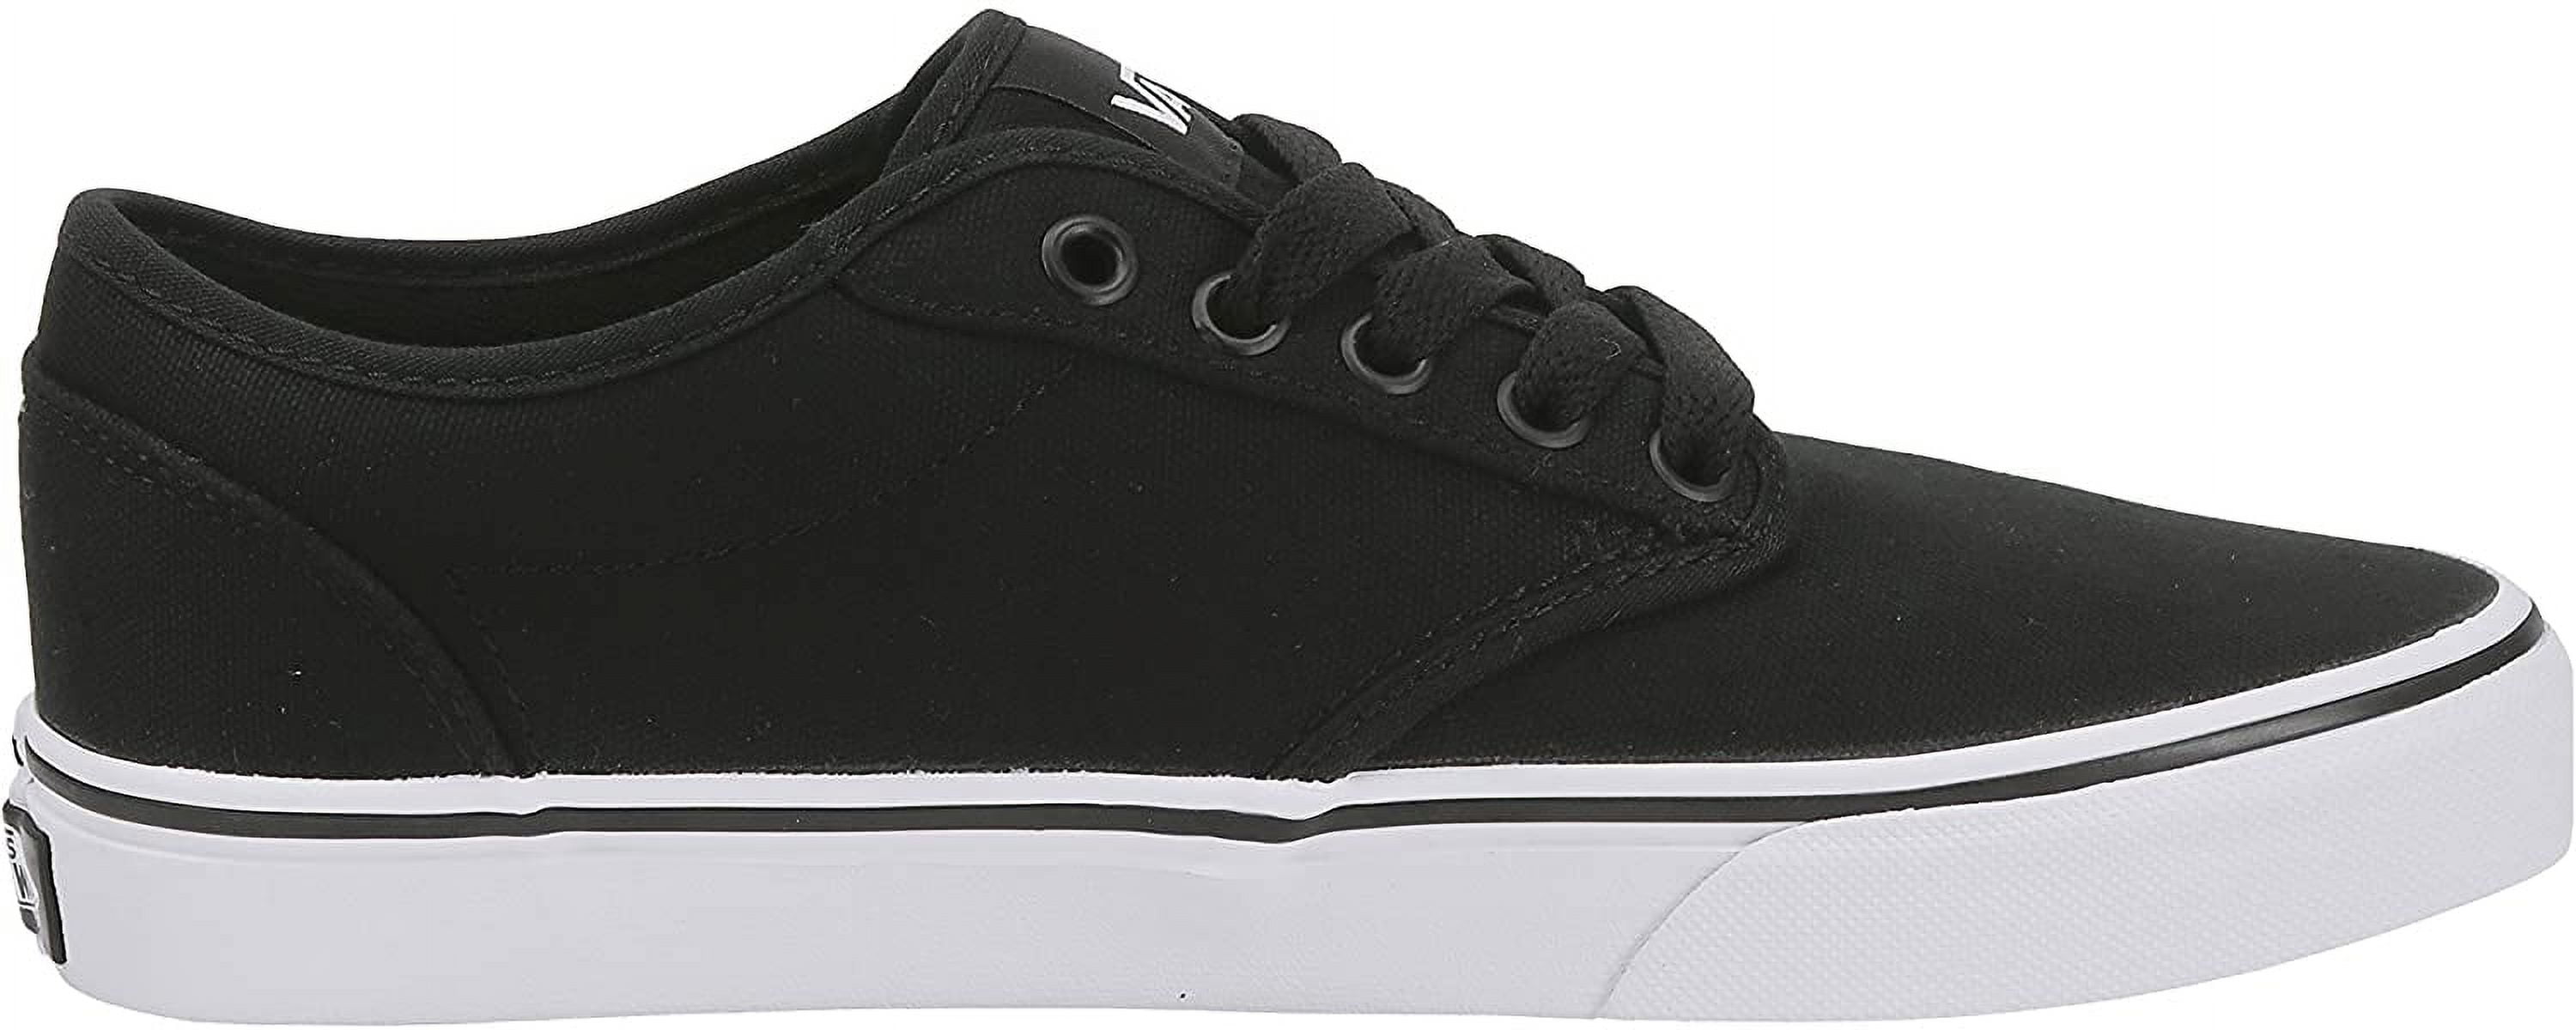 Vans Men's Atwood Canvas Skate Shoes Black/White - Walmart.com